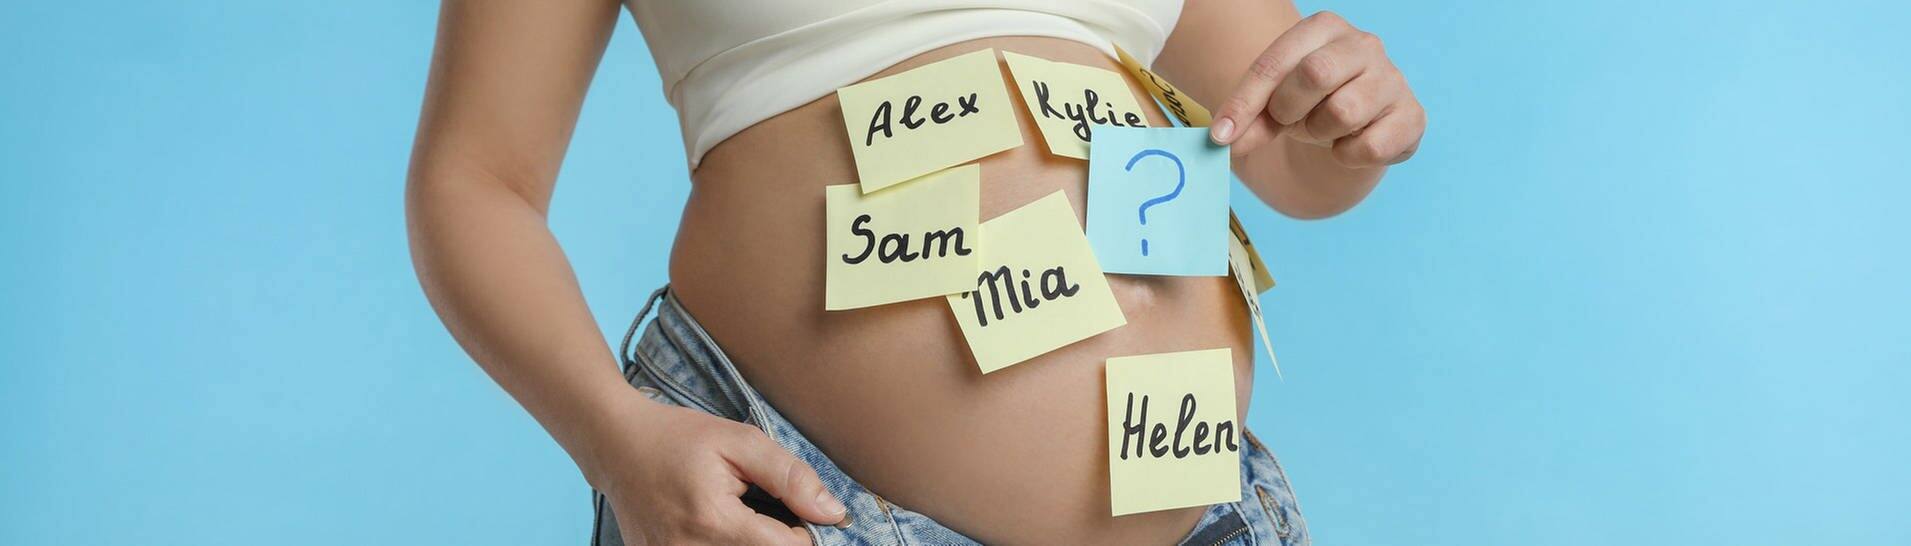 Auf den Bauch einer schwangeren Frau sind bunte Zettel mit verschiedenen Vornamen geklebt. (Foto: Adobe Stock, New Africa)